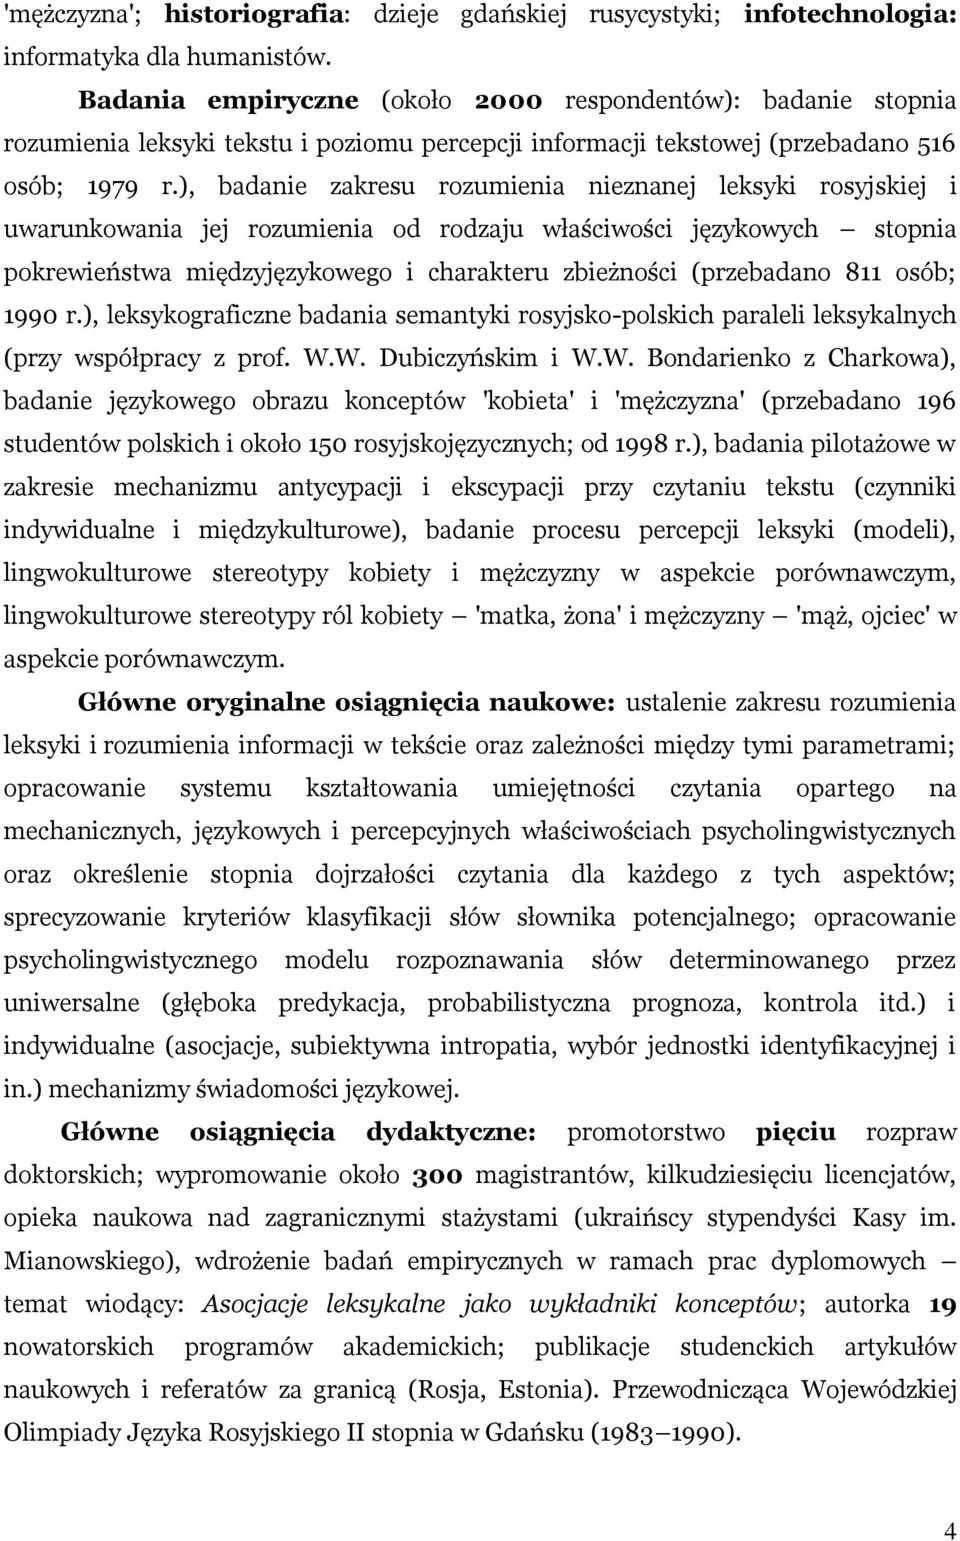 ), badanie zakresu rozumienia nieznanej leksyki rosyjskiej i uwarunkowania jej rozumienia od rodzaju właściwości językowych stopnia pokrewieństwa międzyjęzykowego i charakteru zbieżności (przebadano